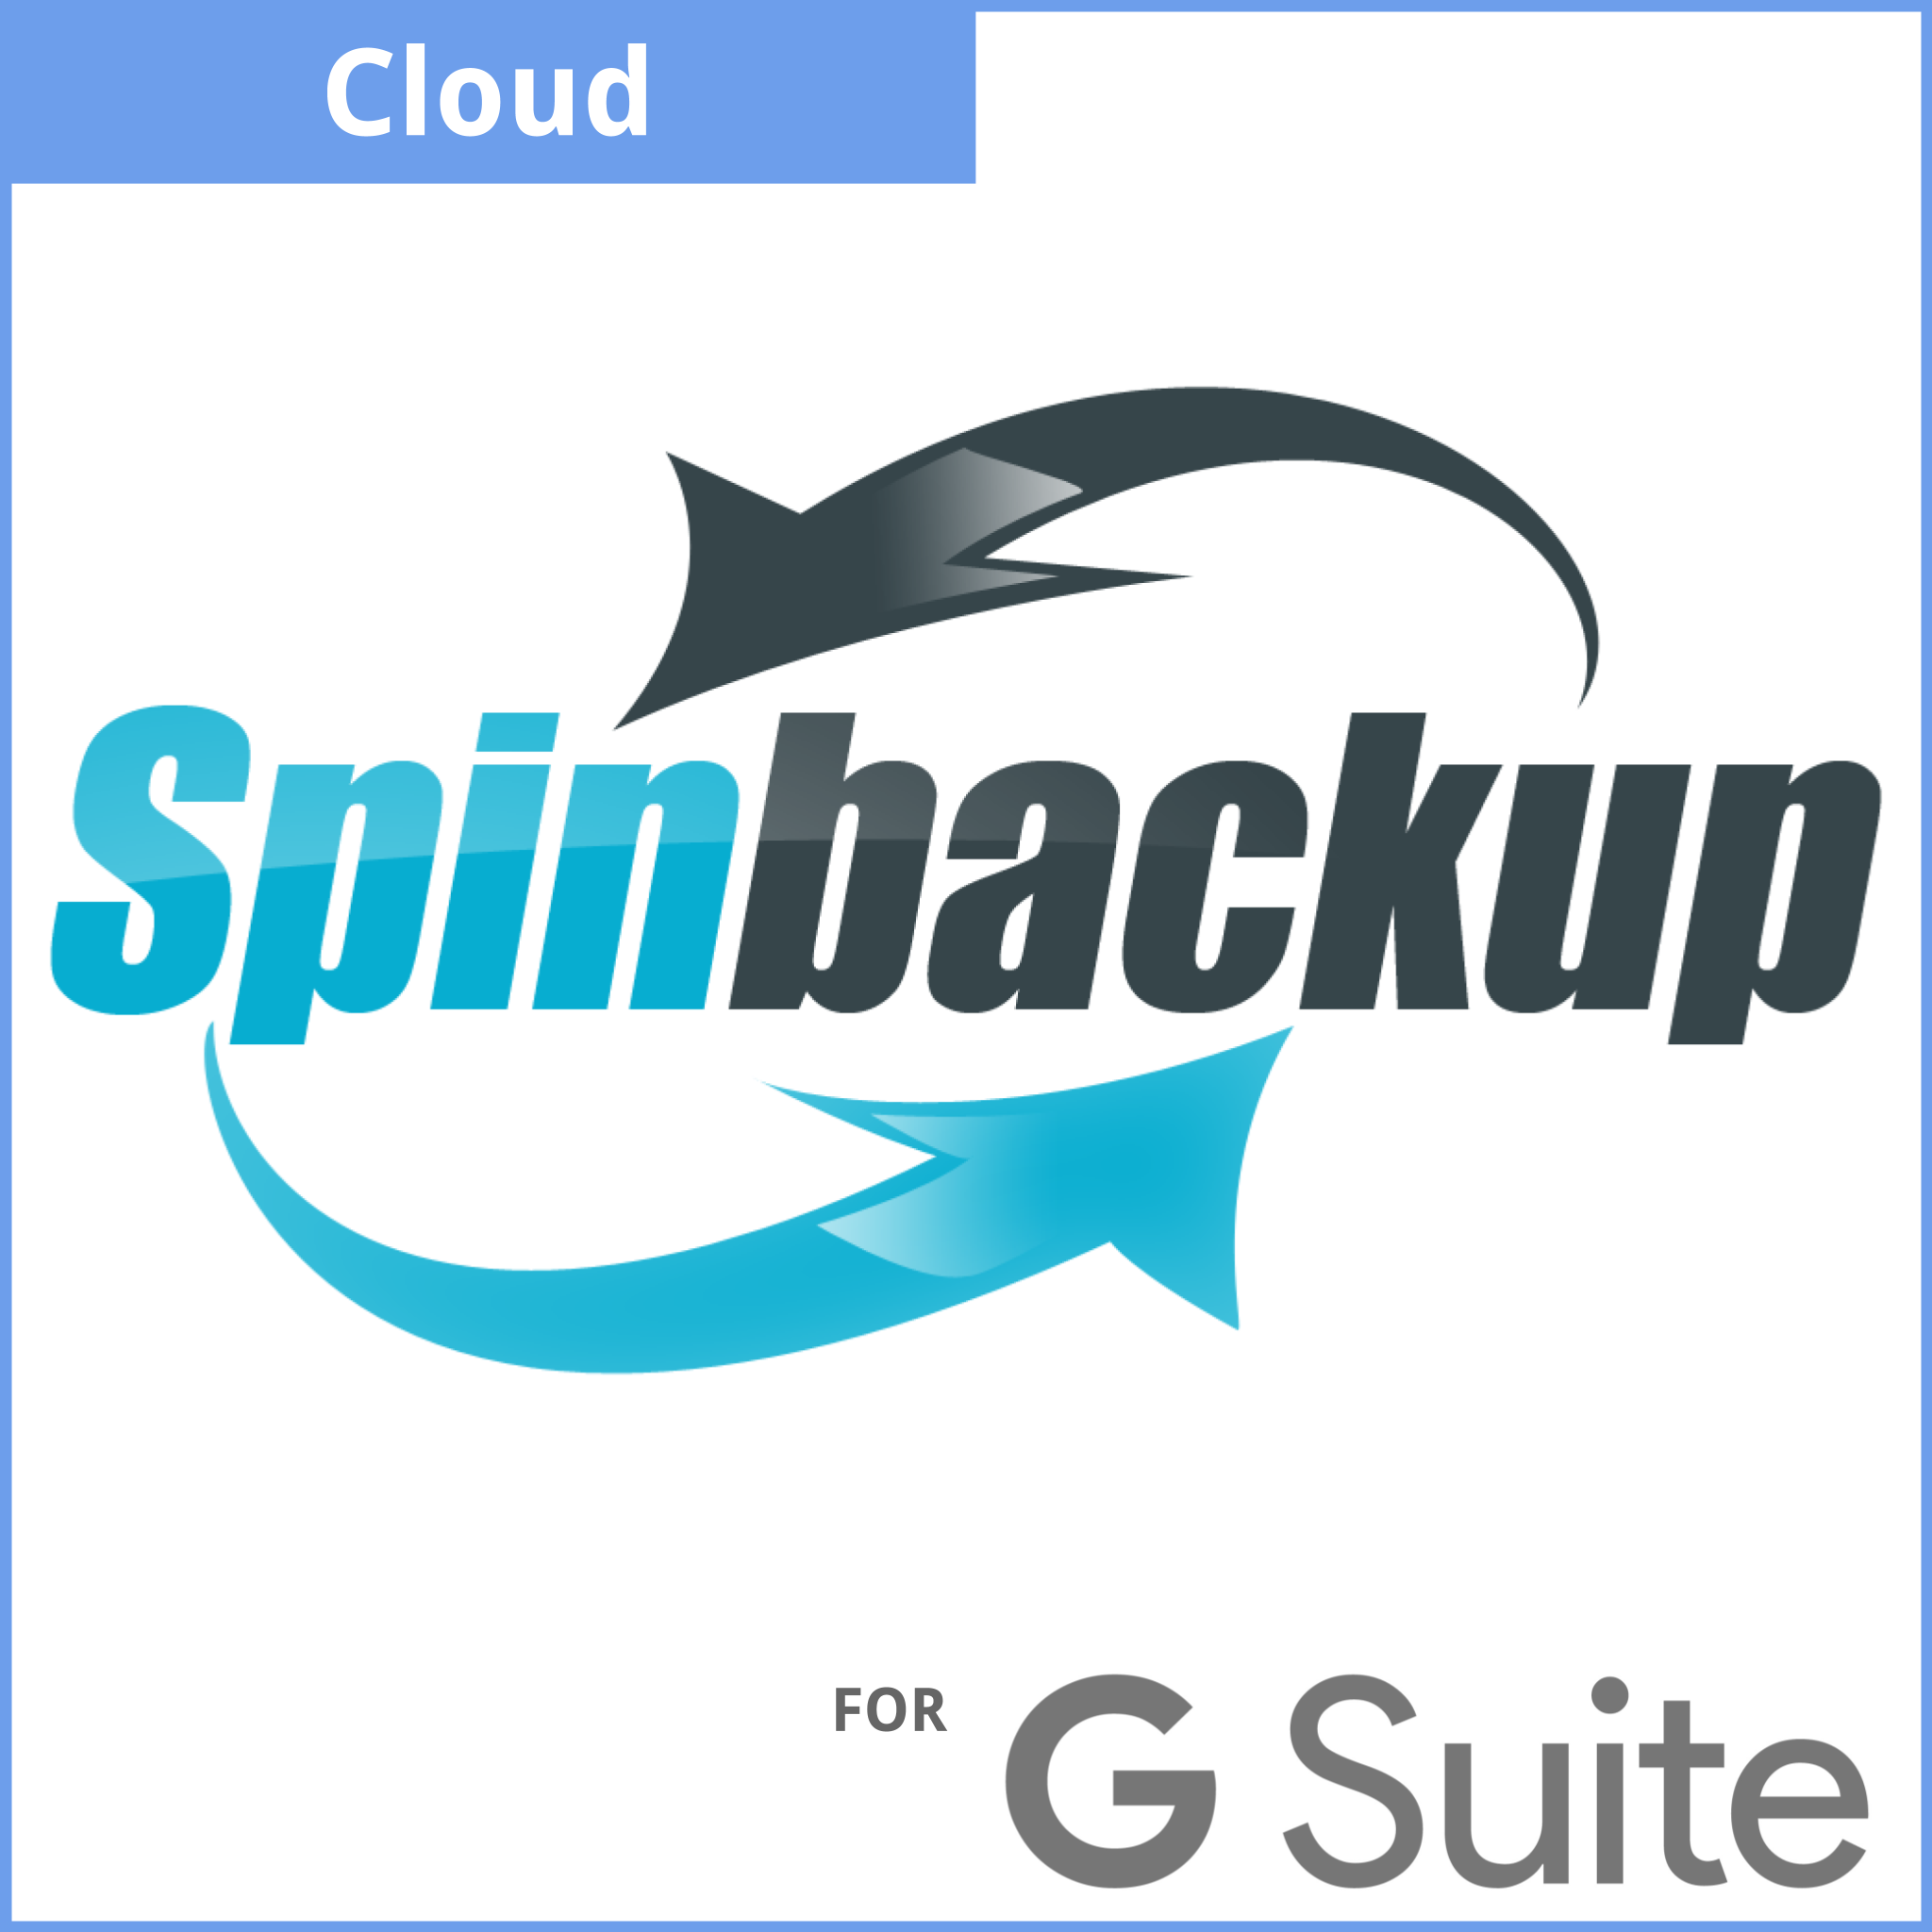 SpinBackup for G Suite - Straight Forward AV and IT